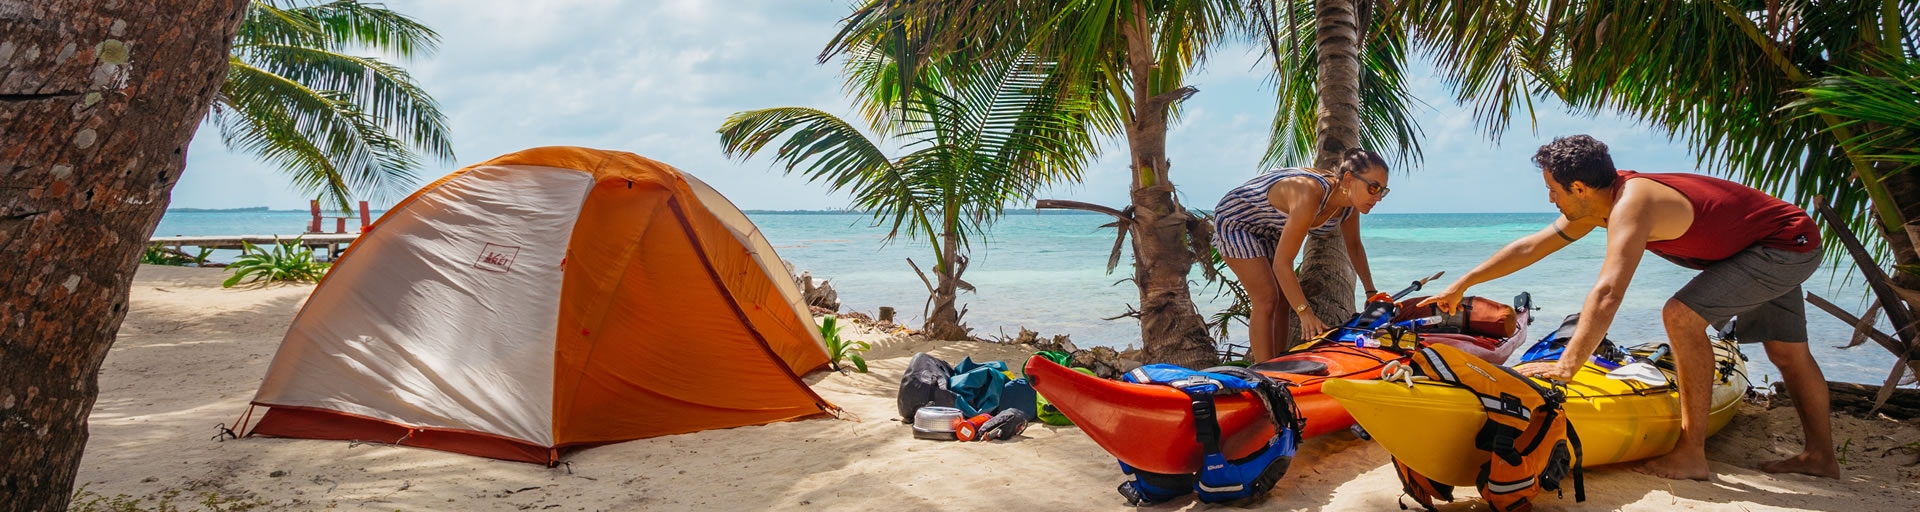 Sea Kayak Camping in Belize